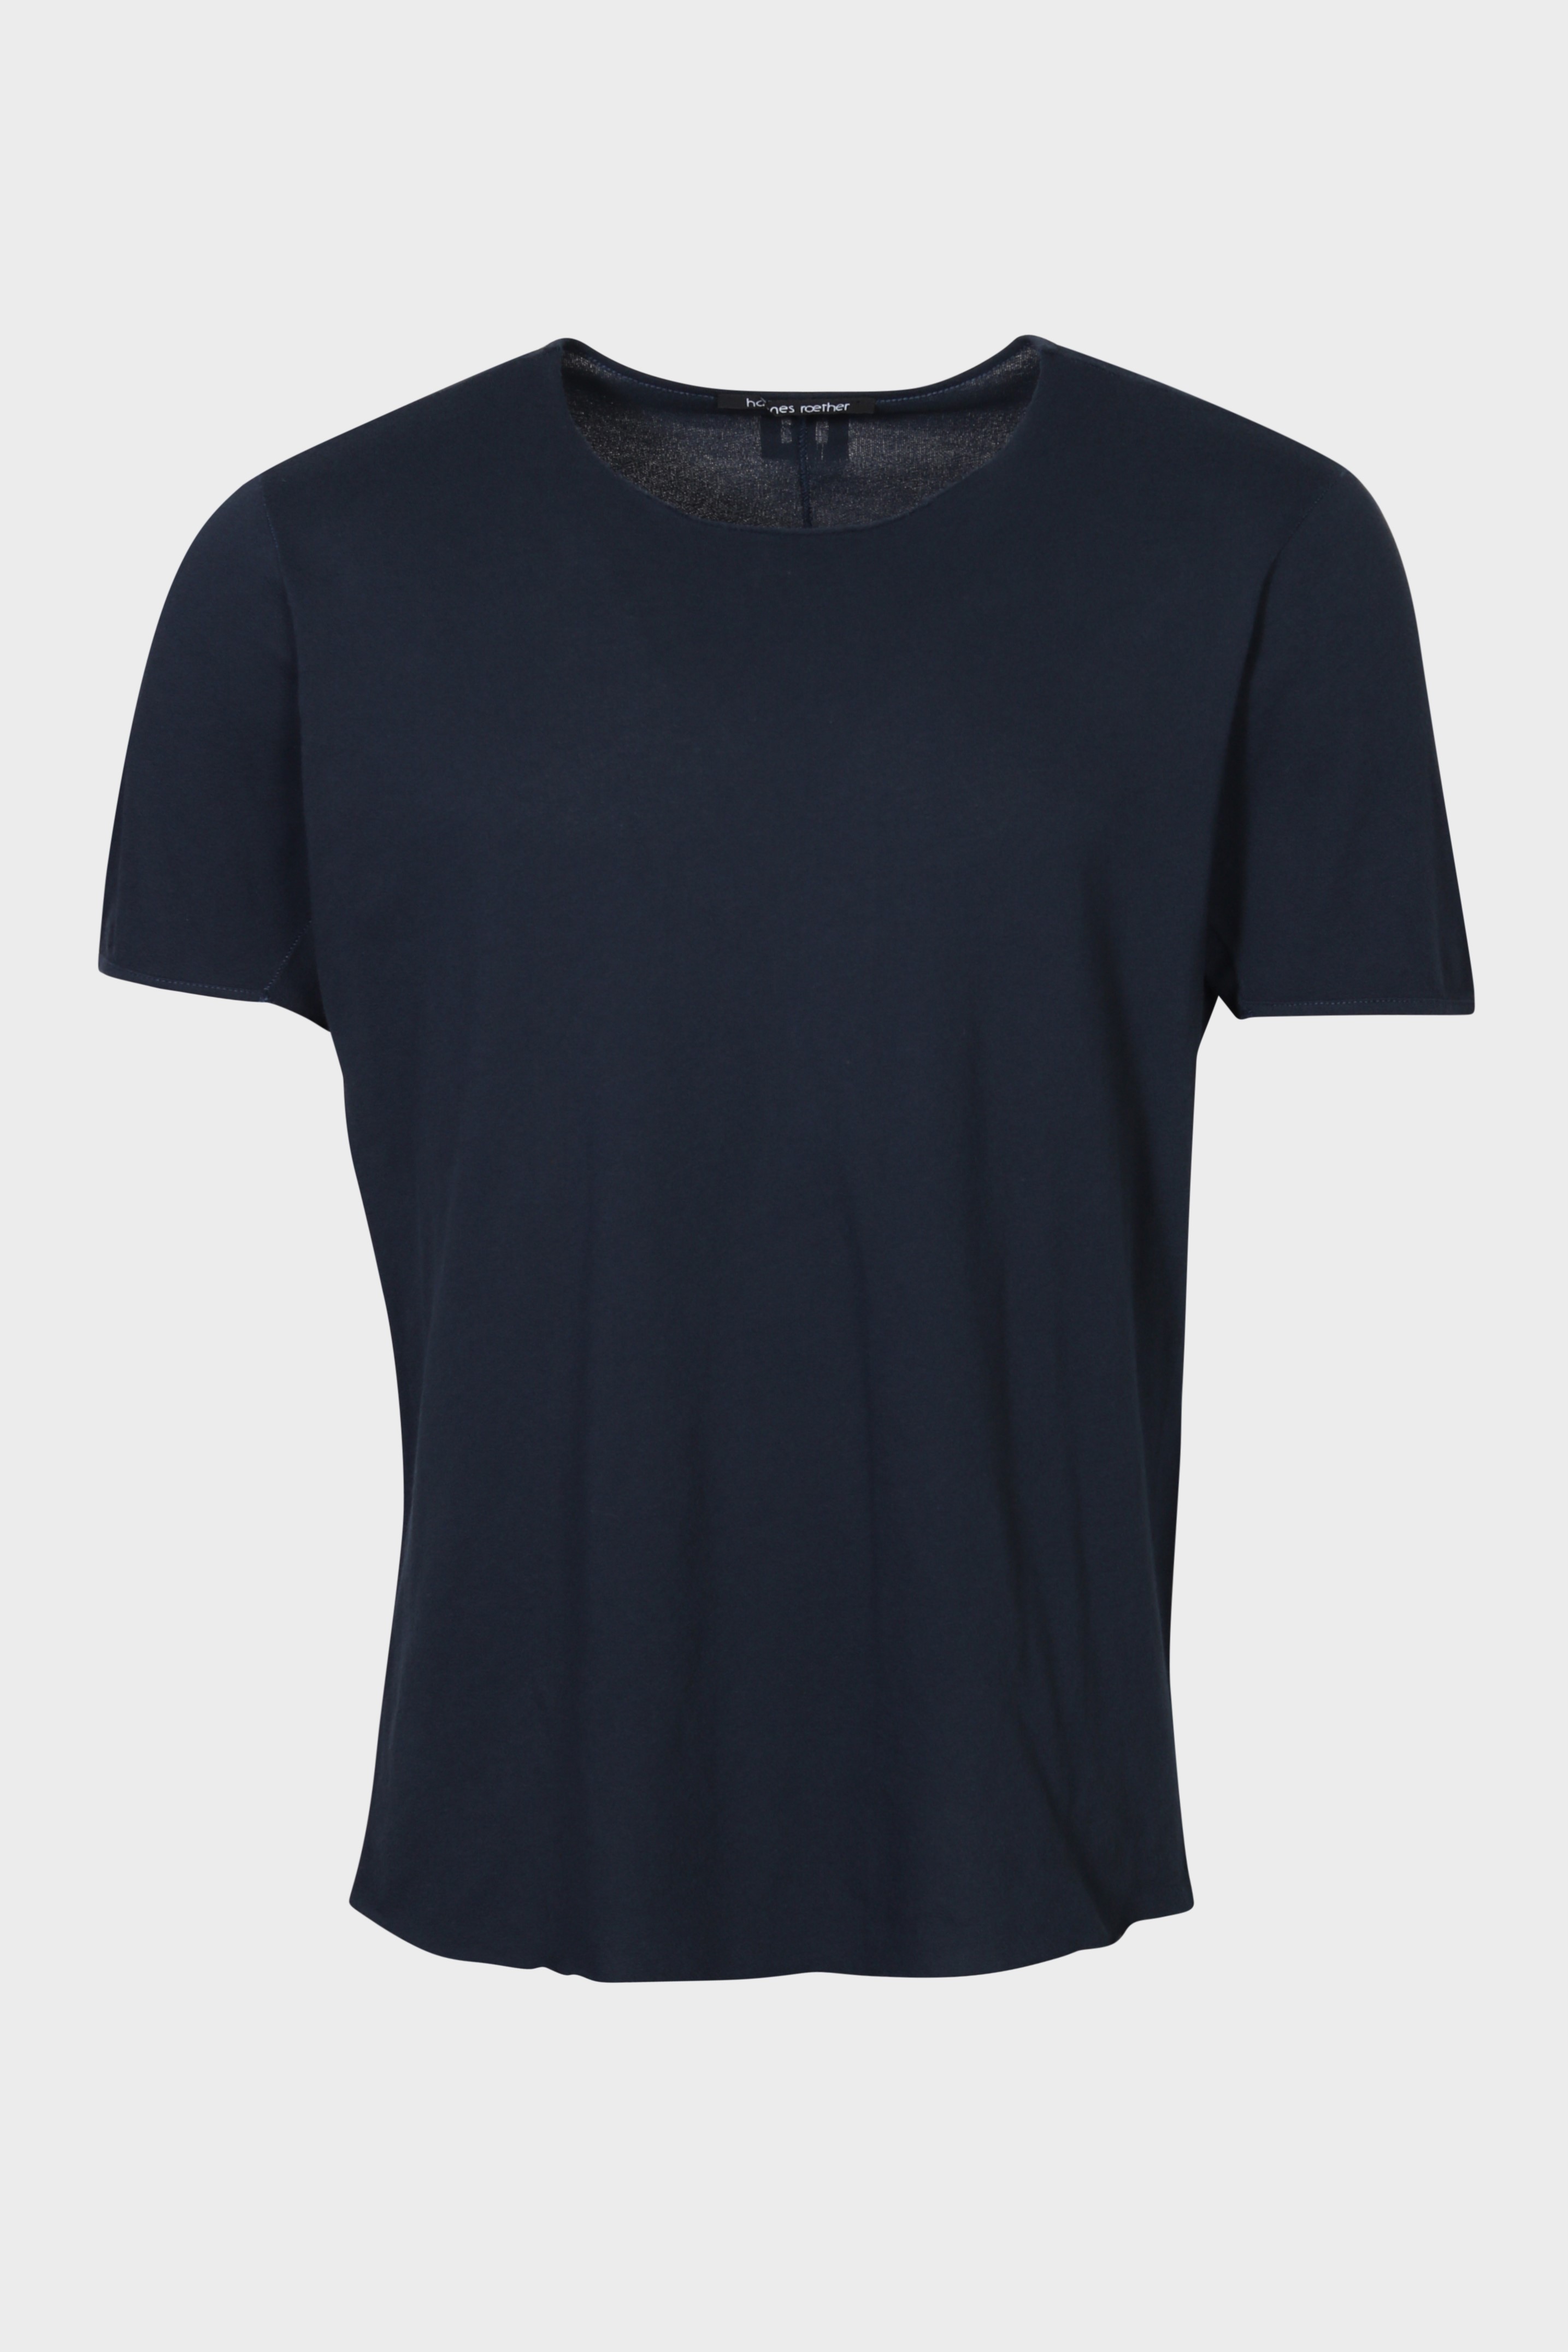 HANNES ROETHER T-Shirt in Dark Navy 2XL